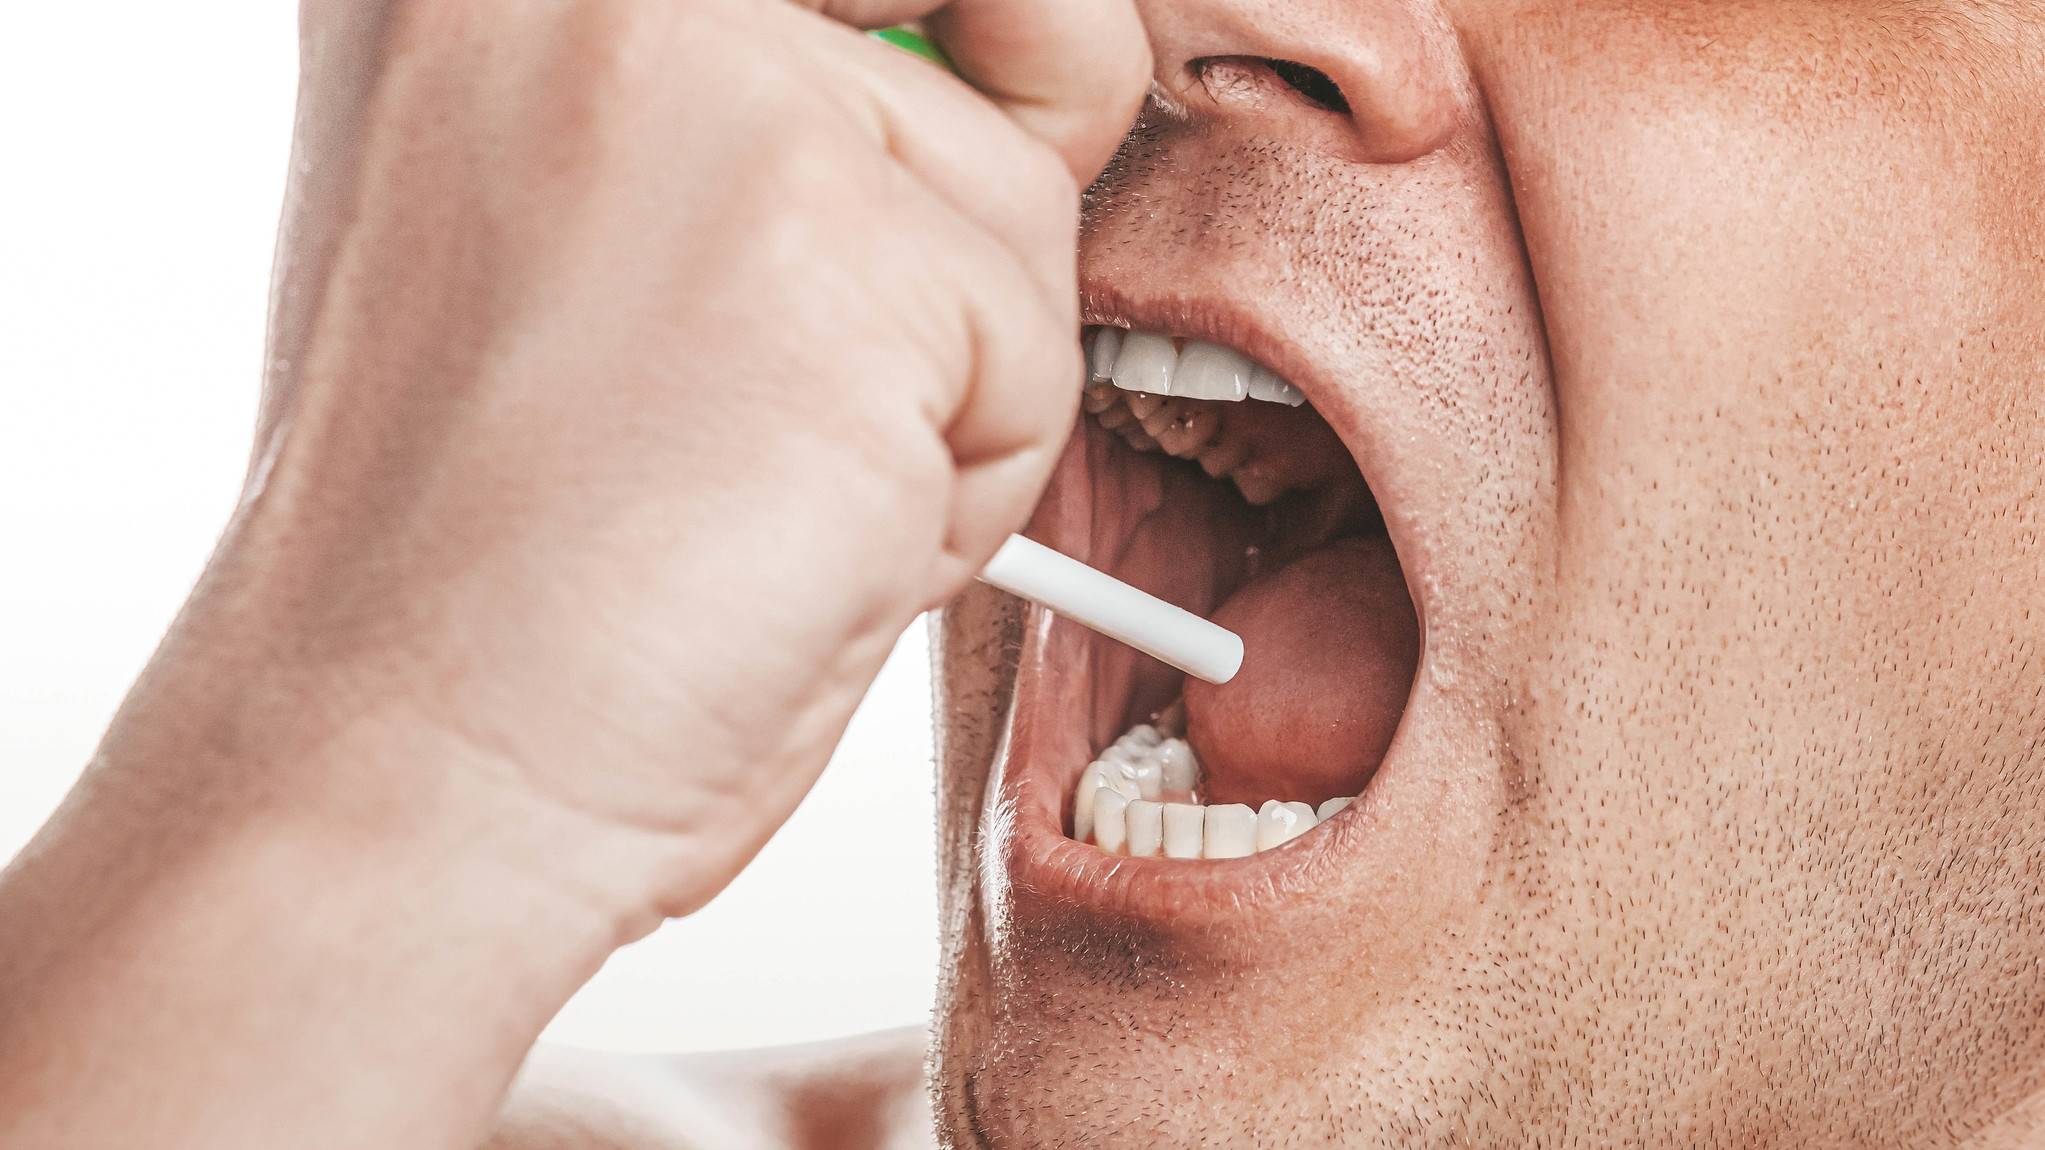 Рак полости рта больше не редкость, и у него есть четыре главных признака